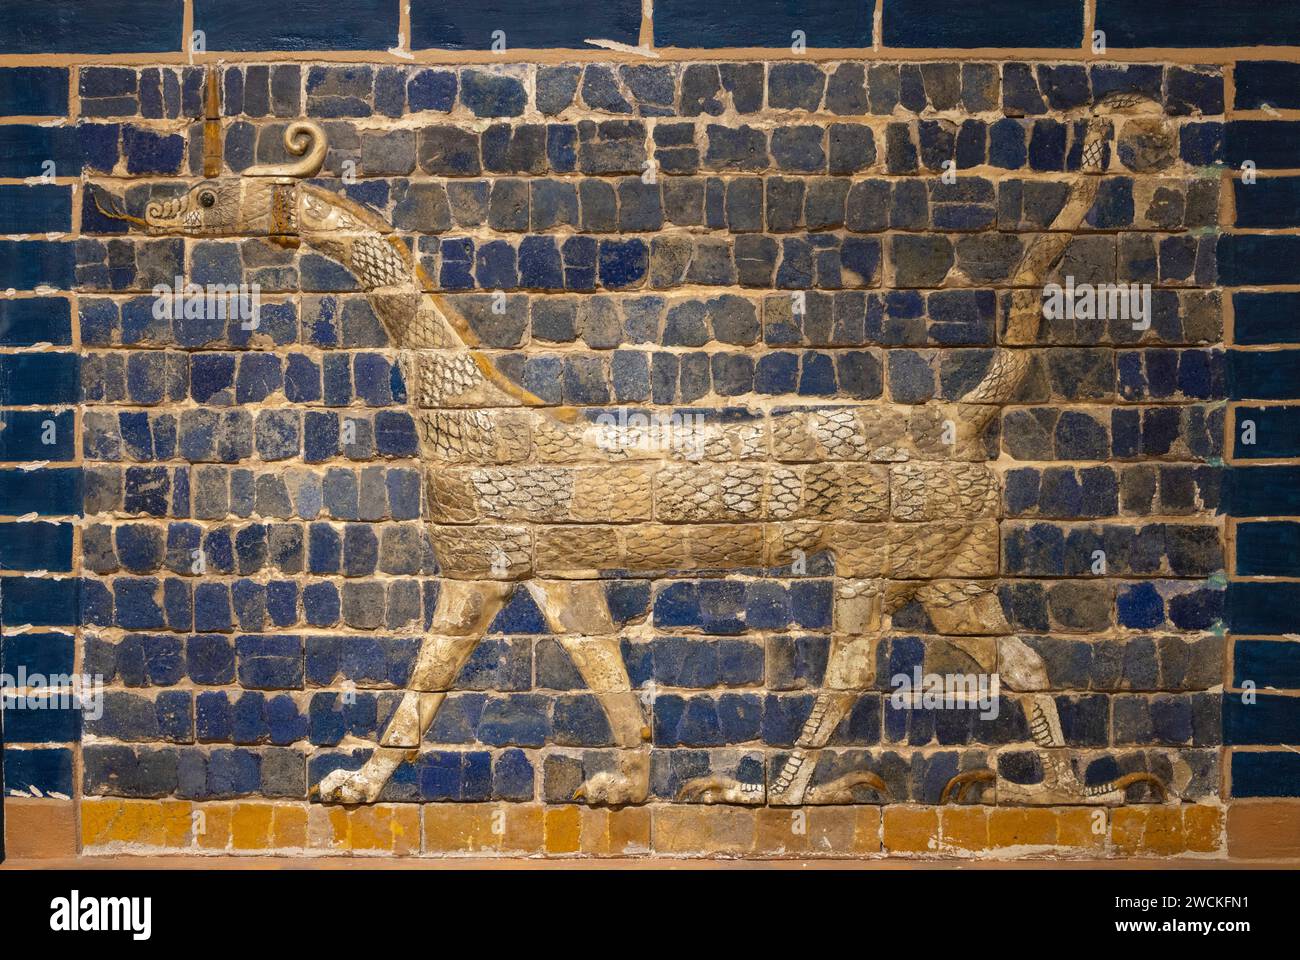 Mushhushshu-dragon, Symbol of the God Marduk, 604 - 562 BCE molded and glazed baked brick, Iraq Museum, Baghdad Stock Photo